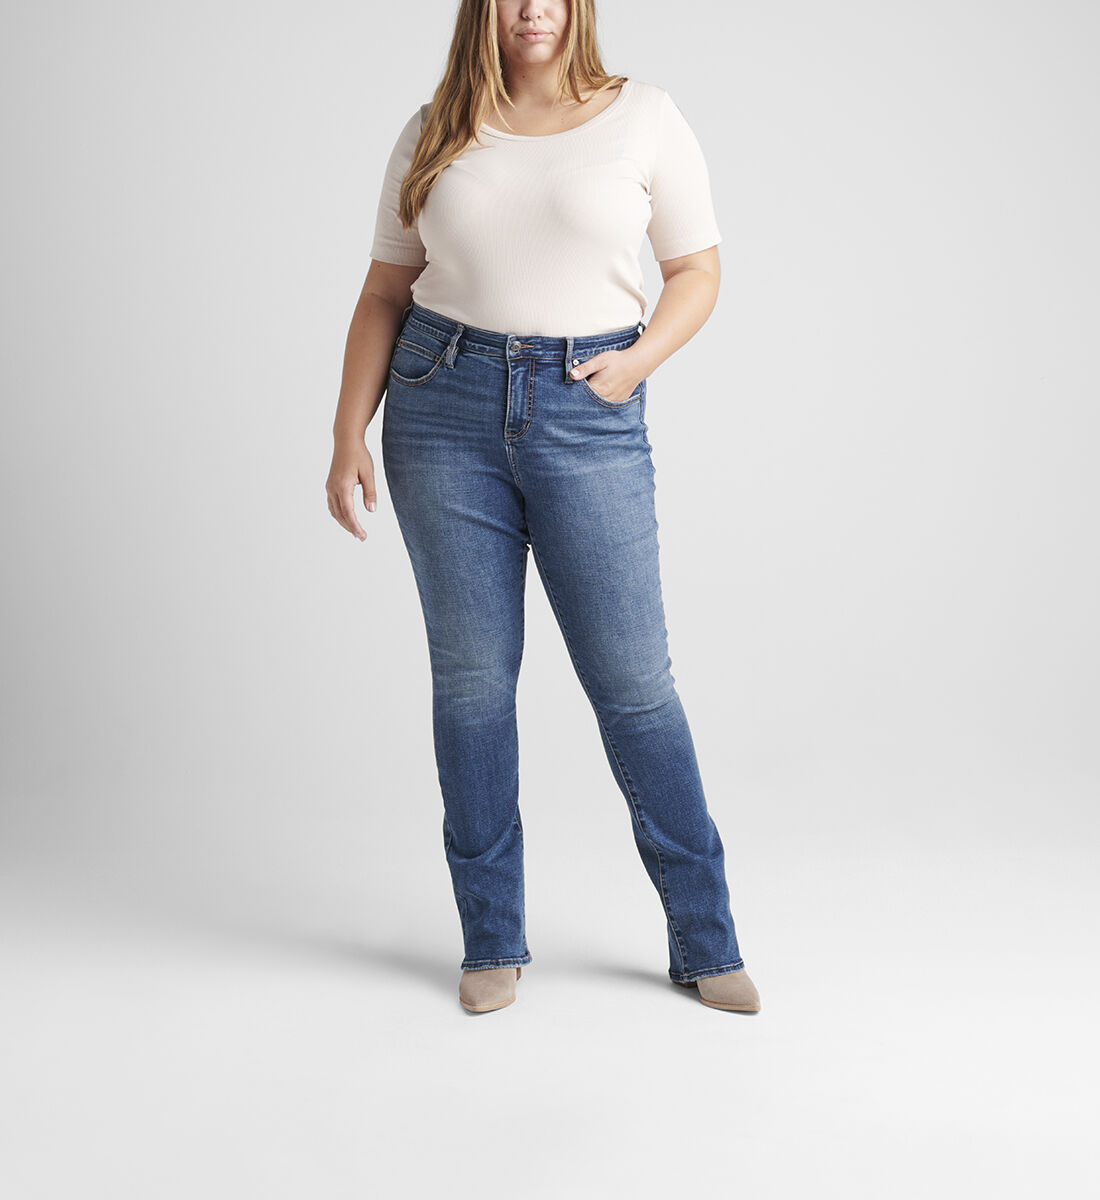 Eloise Mid Rise Bootcut Jeans Plus Size Front